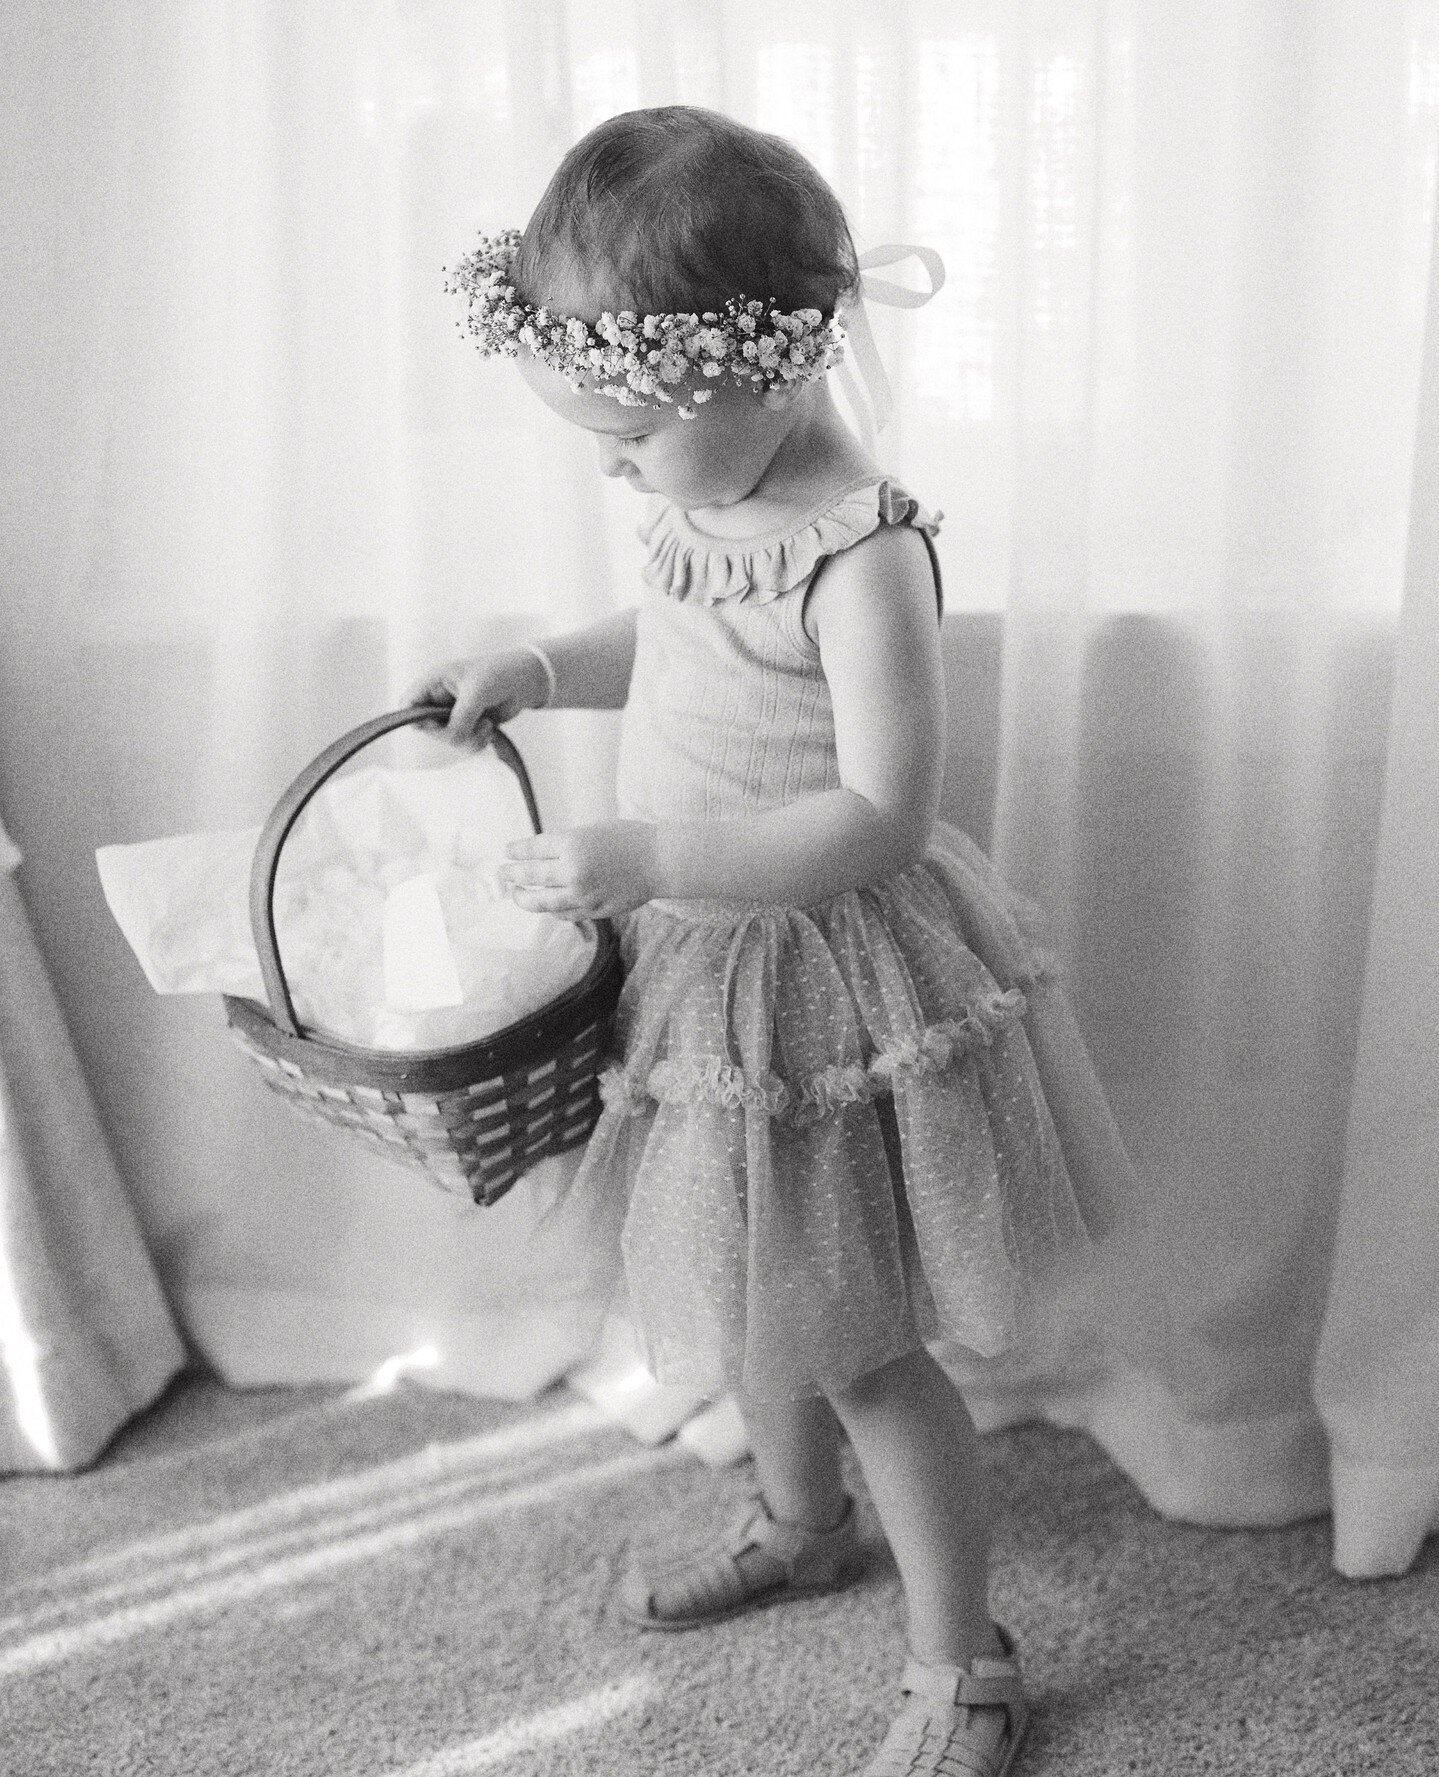 Little flower girl 🌺⁠
⁠
#curateweddings